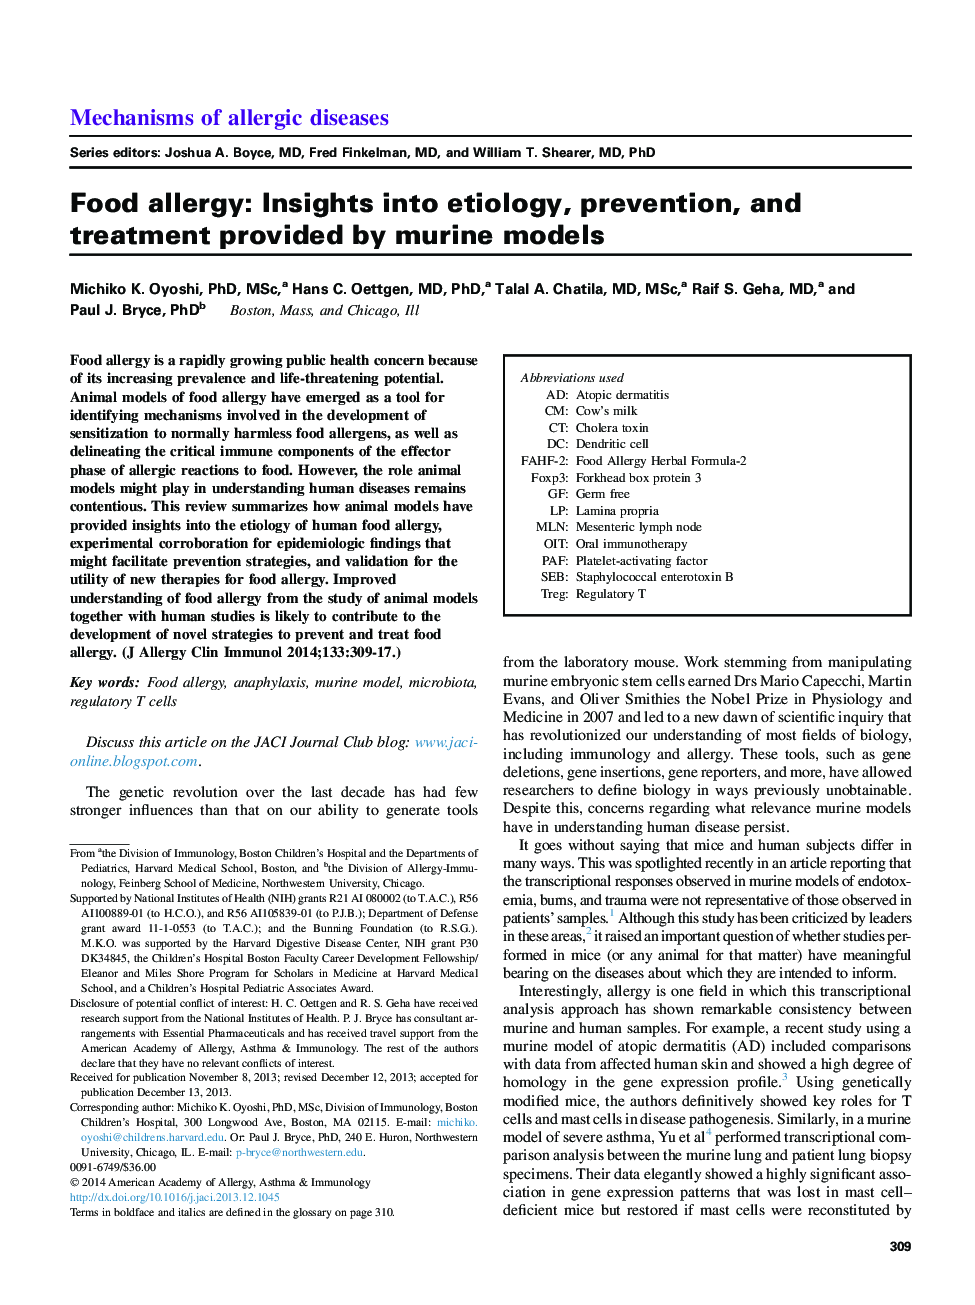 آلرژی غذایی: بینش های مربوط به علت، پیشگیری و درمان ارائه شده توسط مدل های چینی 